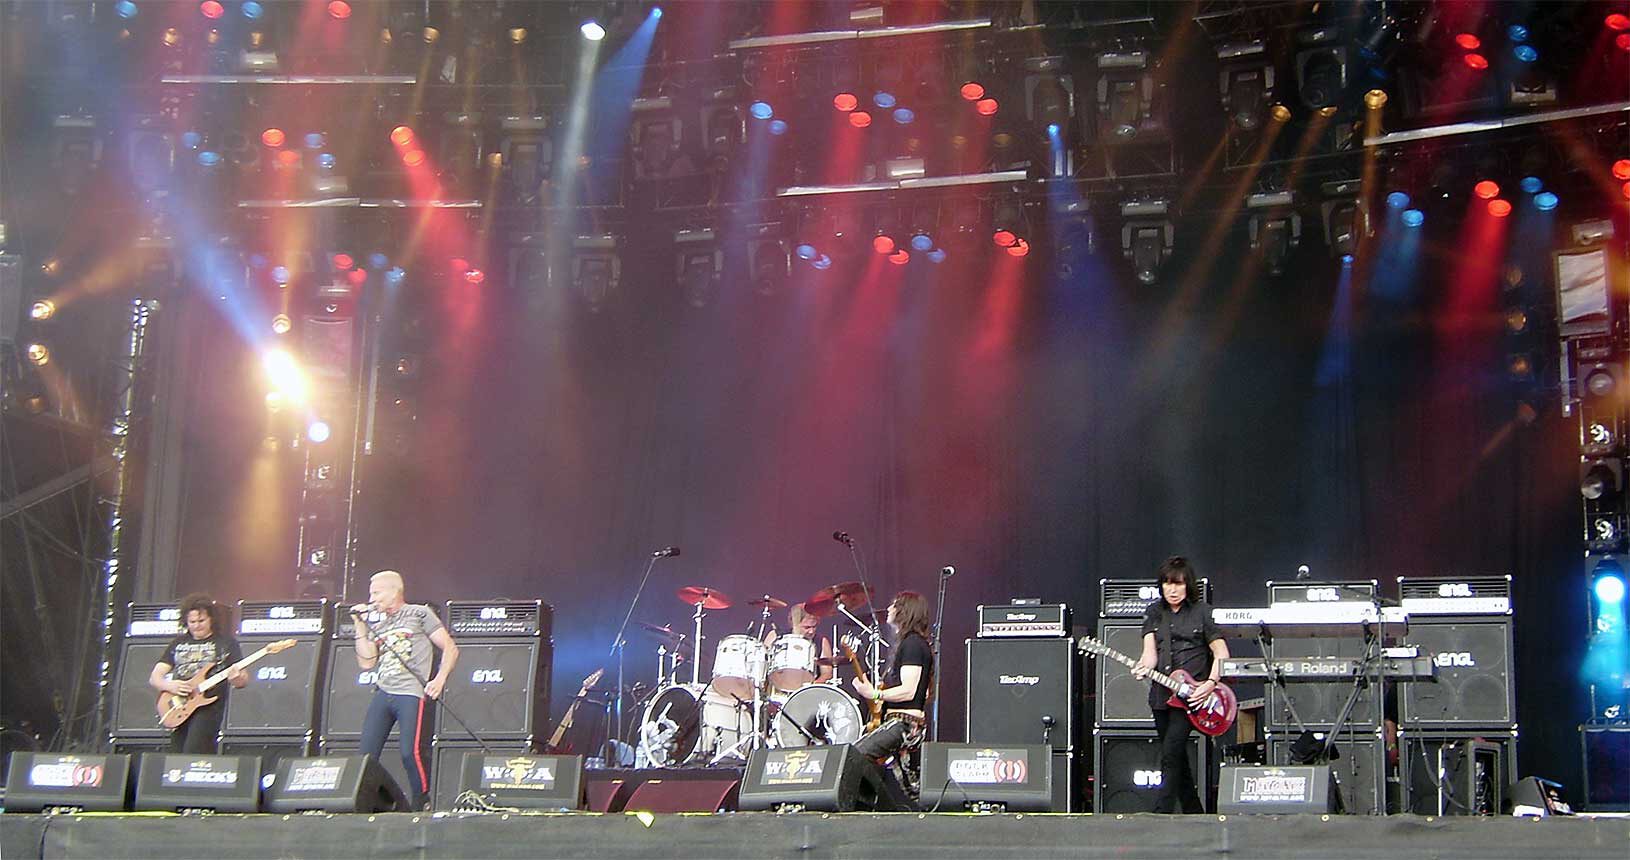 Rockkonzerte sind so laut wie startende Flugzeuge. Die britische Band UFO beim Wacken Open Air (Deutschland) im Jahr 2009 (Public Domain)